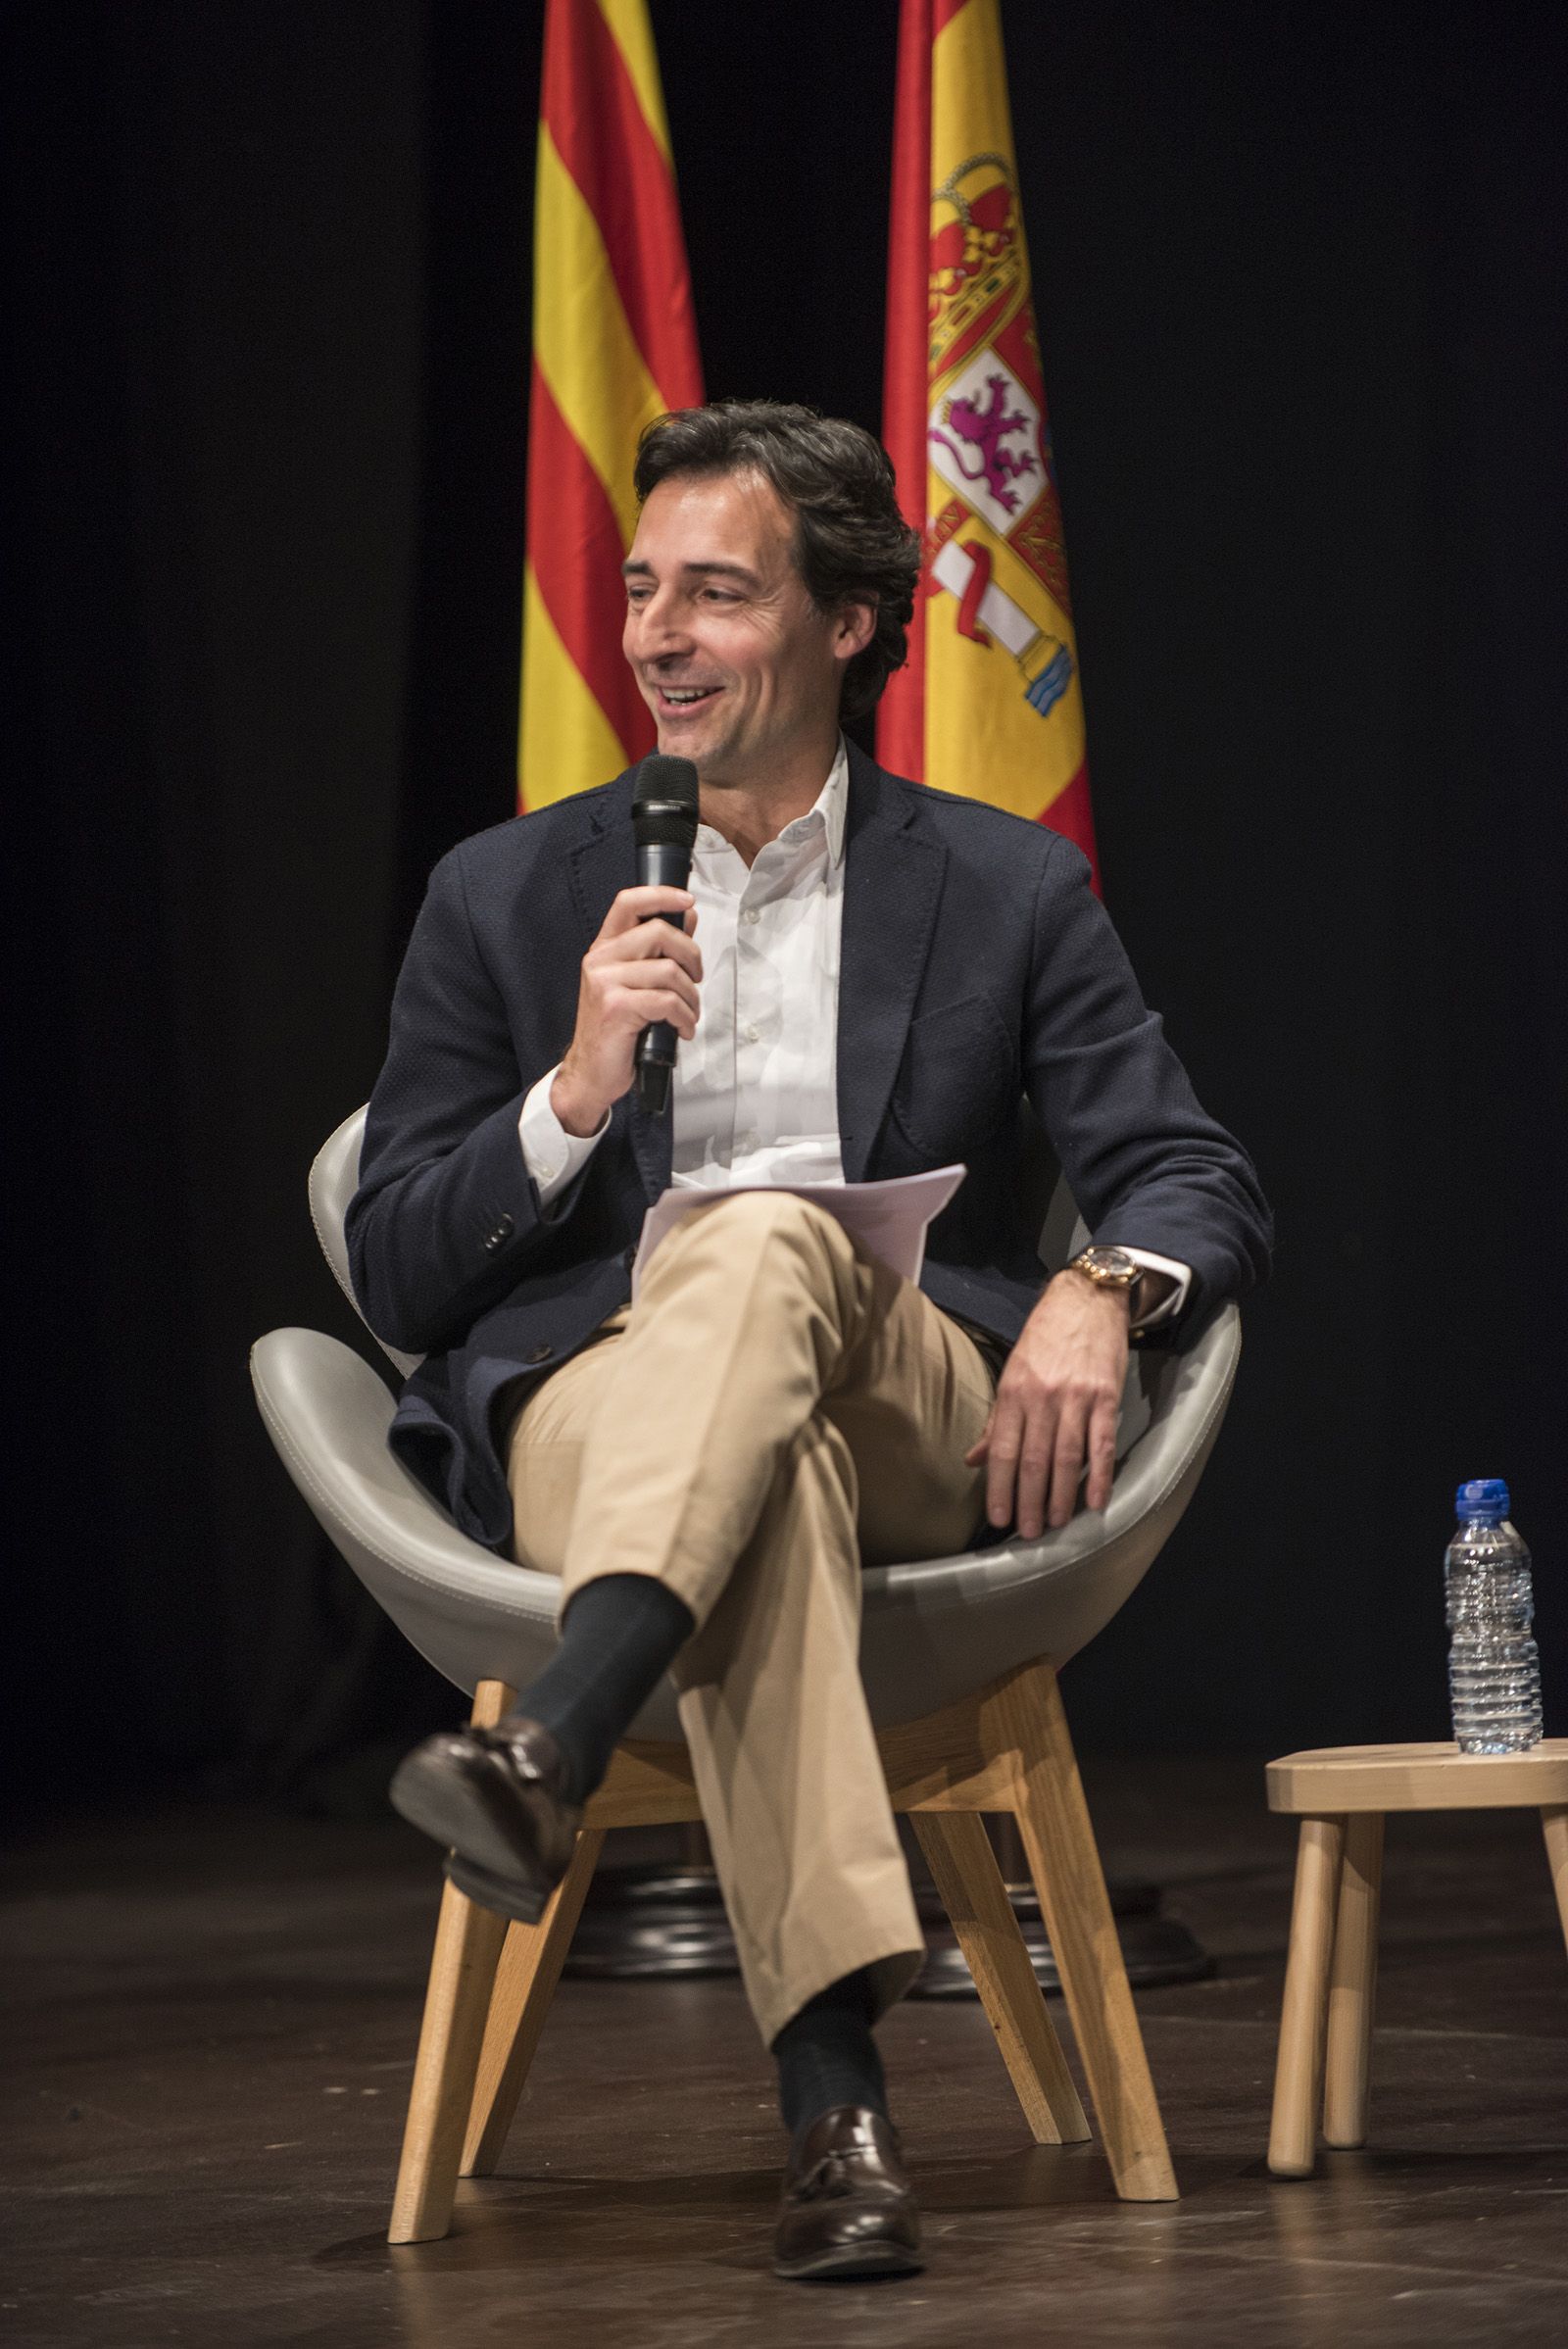 Presentació del candidat del PP a la alcaldía de Sant Cugat, Alvaro Benejam. FOTO: Bernat Millet.